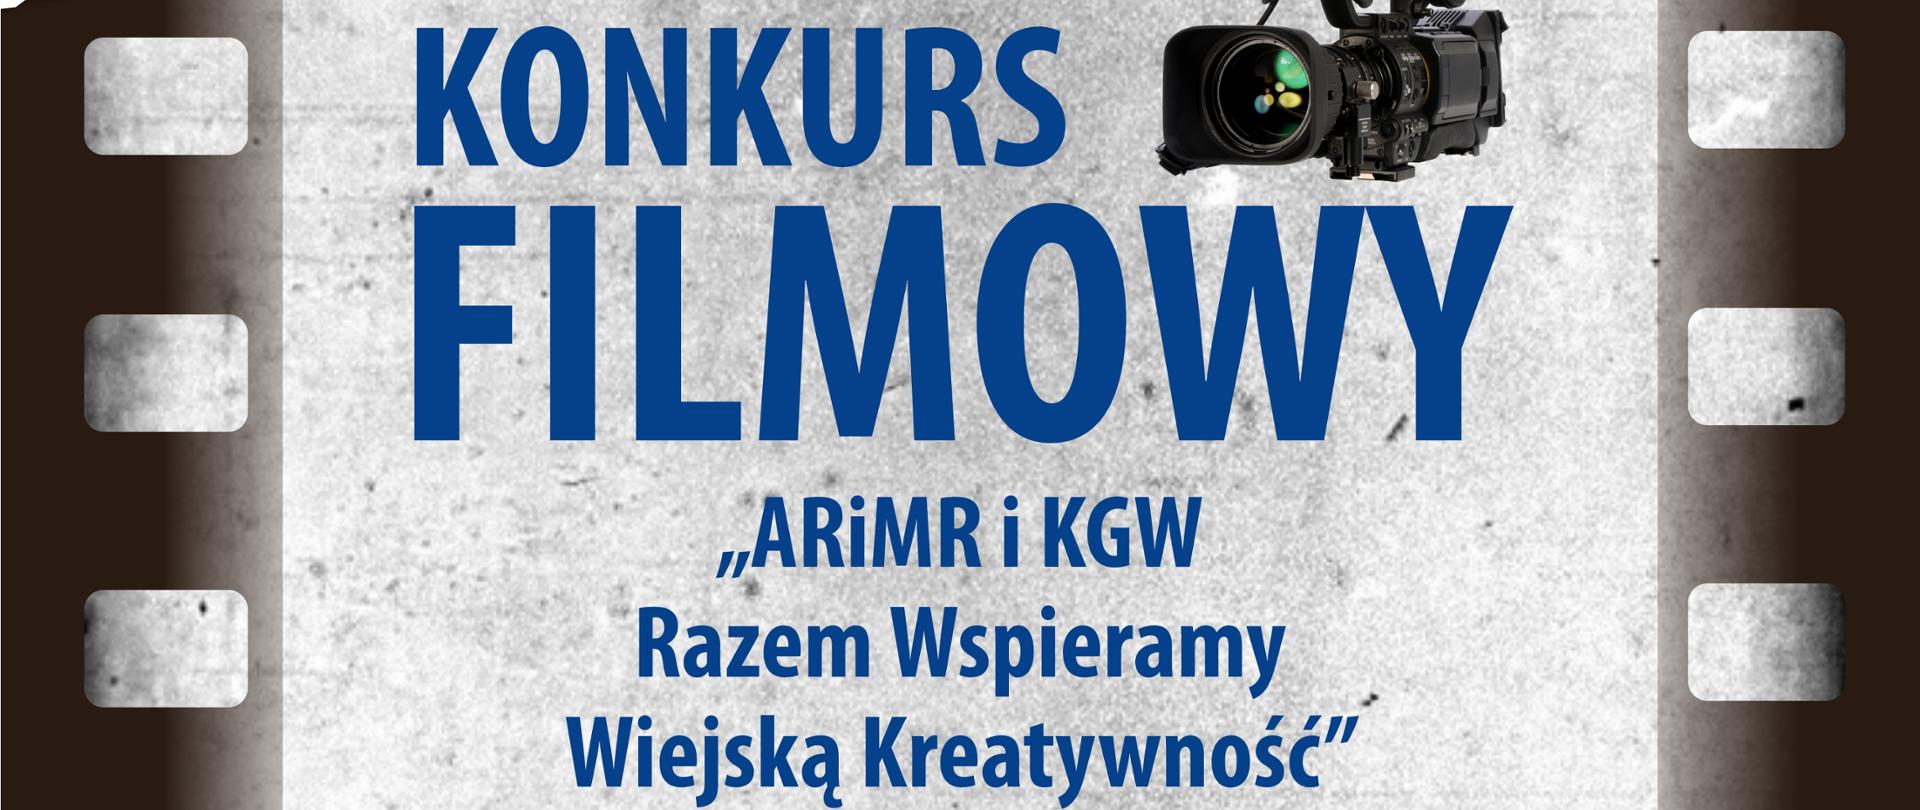 Plakat_Konkurs_filmowy_KGW